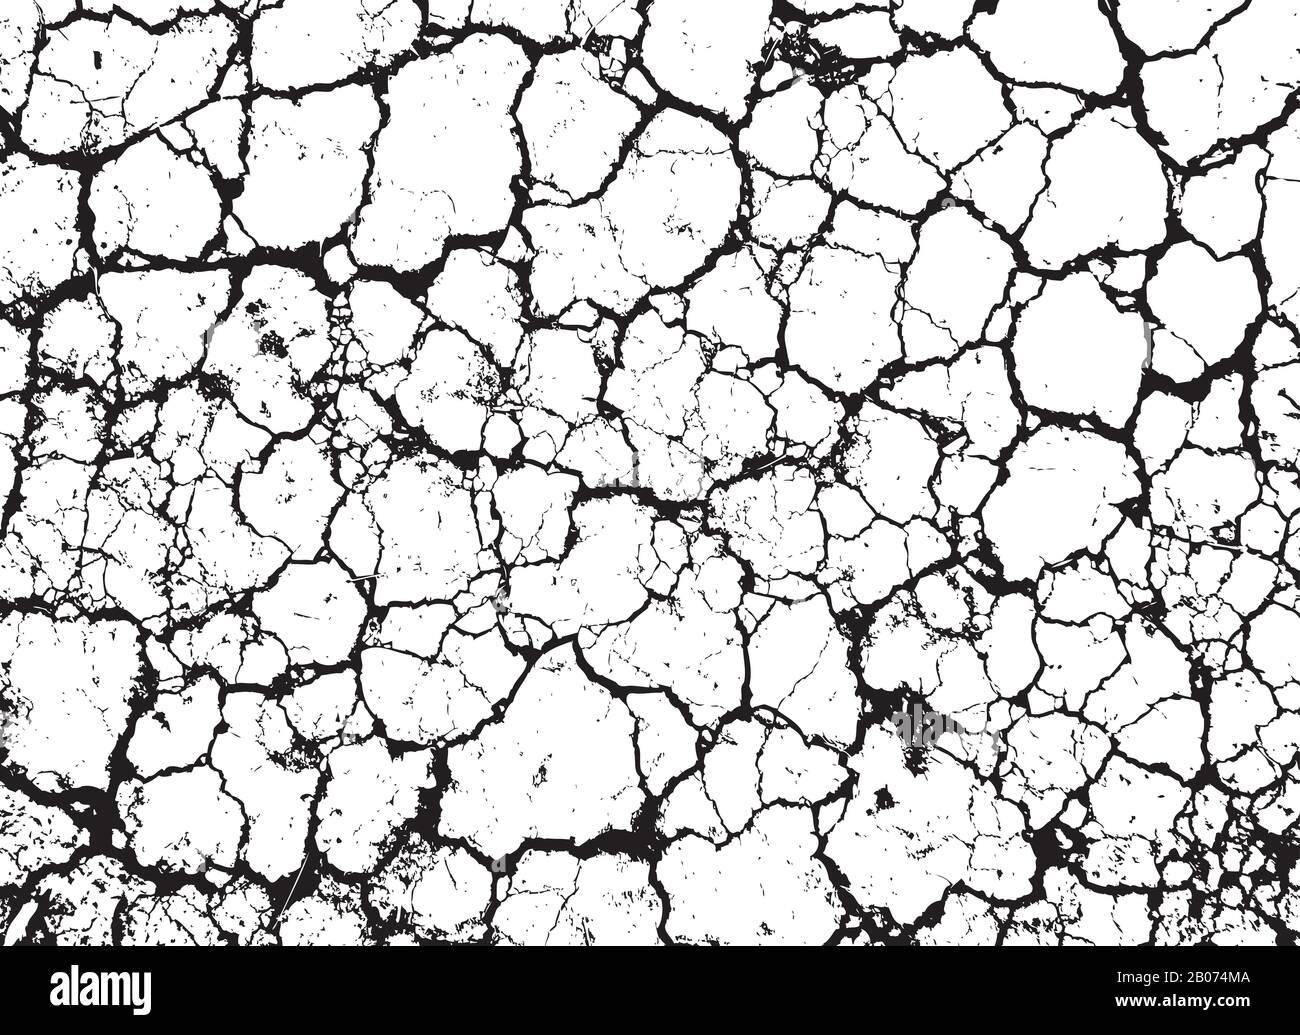 Grunge a fissuré la texture vectorielle de mur sale ou de sol sec. Illustration d'arrière-plan avec effet de motif grungy Illustration de Vecteur